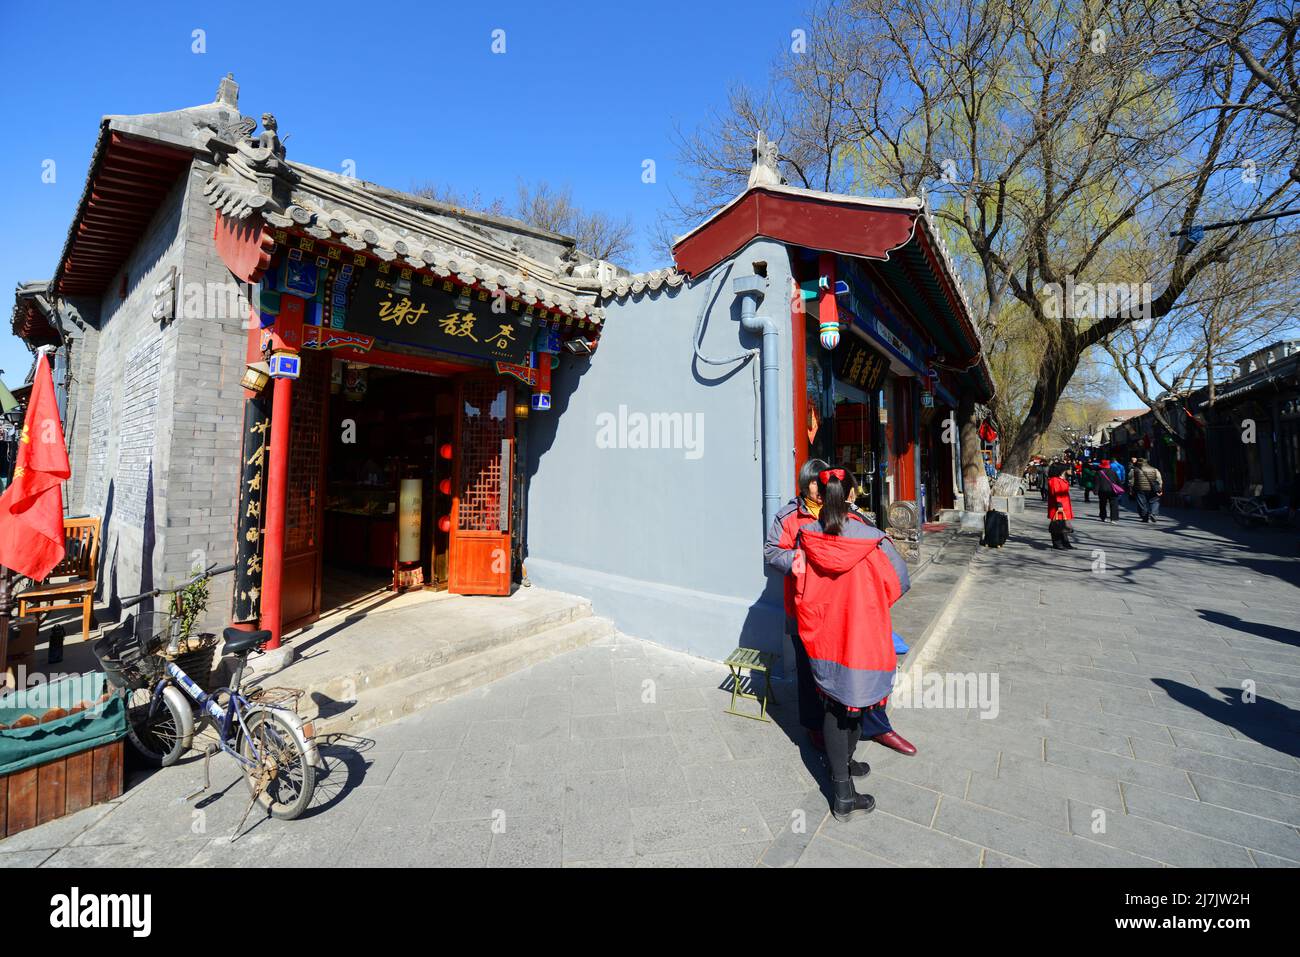 Edifici cinesi di vecchio stile in un quartiere cinese tradizionale (Hutong) a Pechino, Cina. Foto Stock